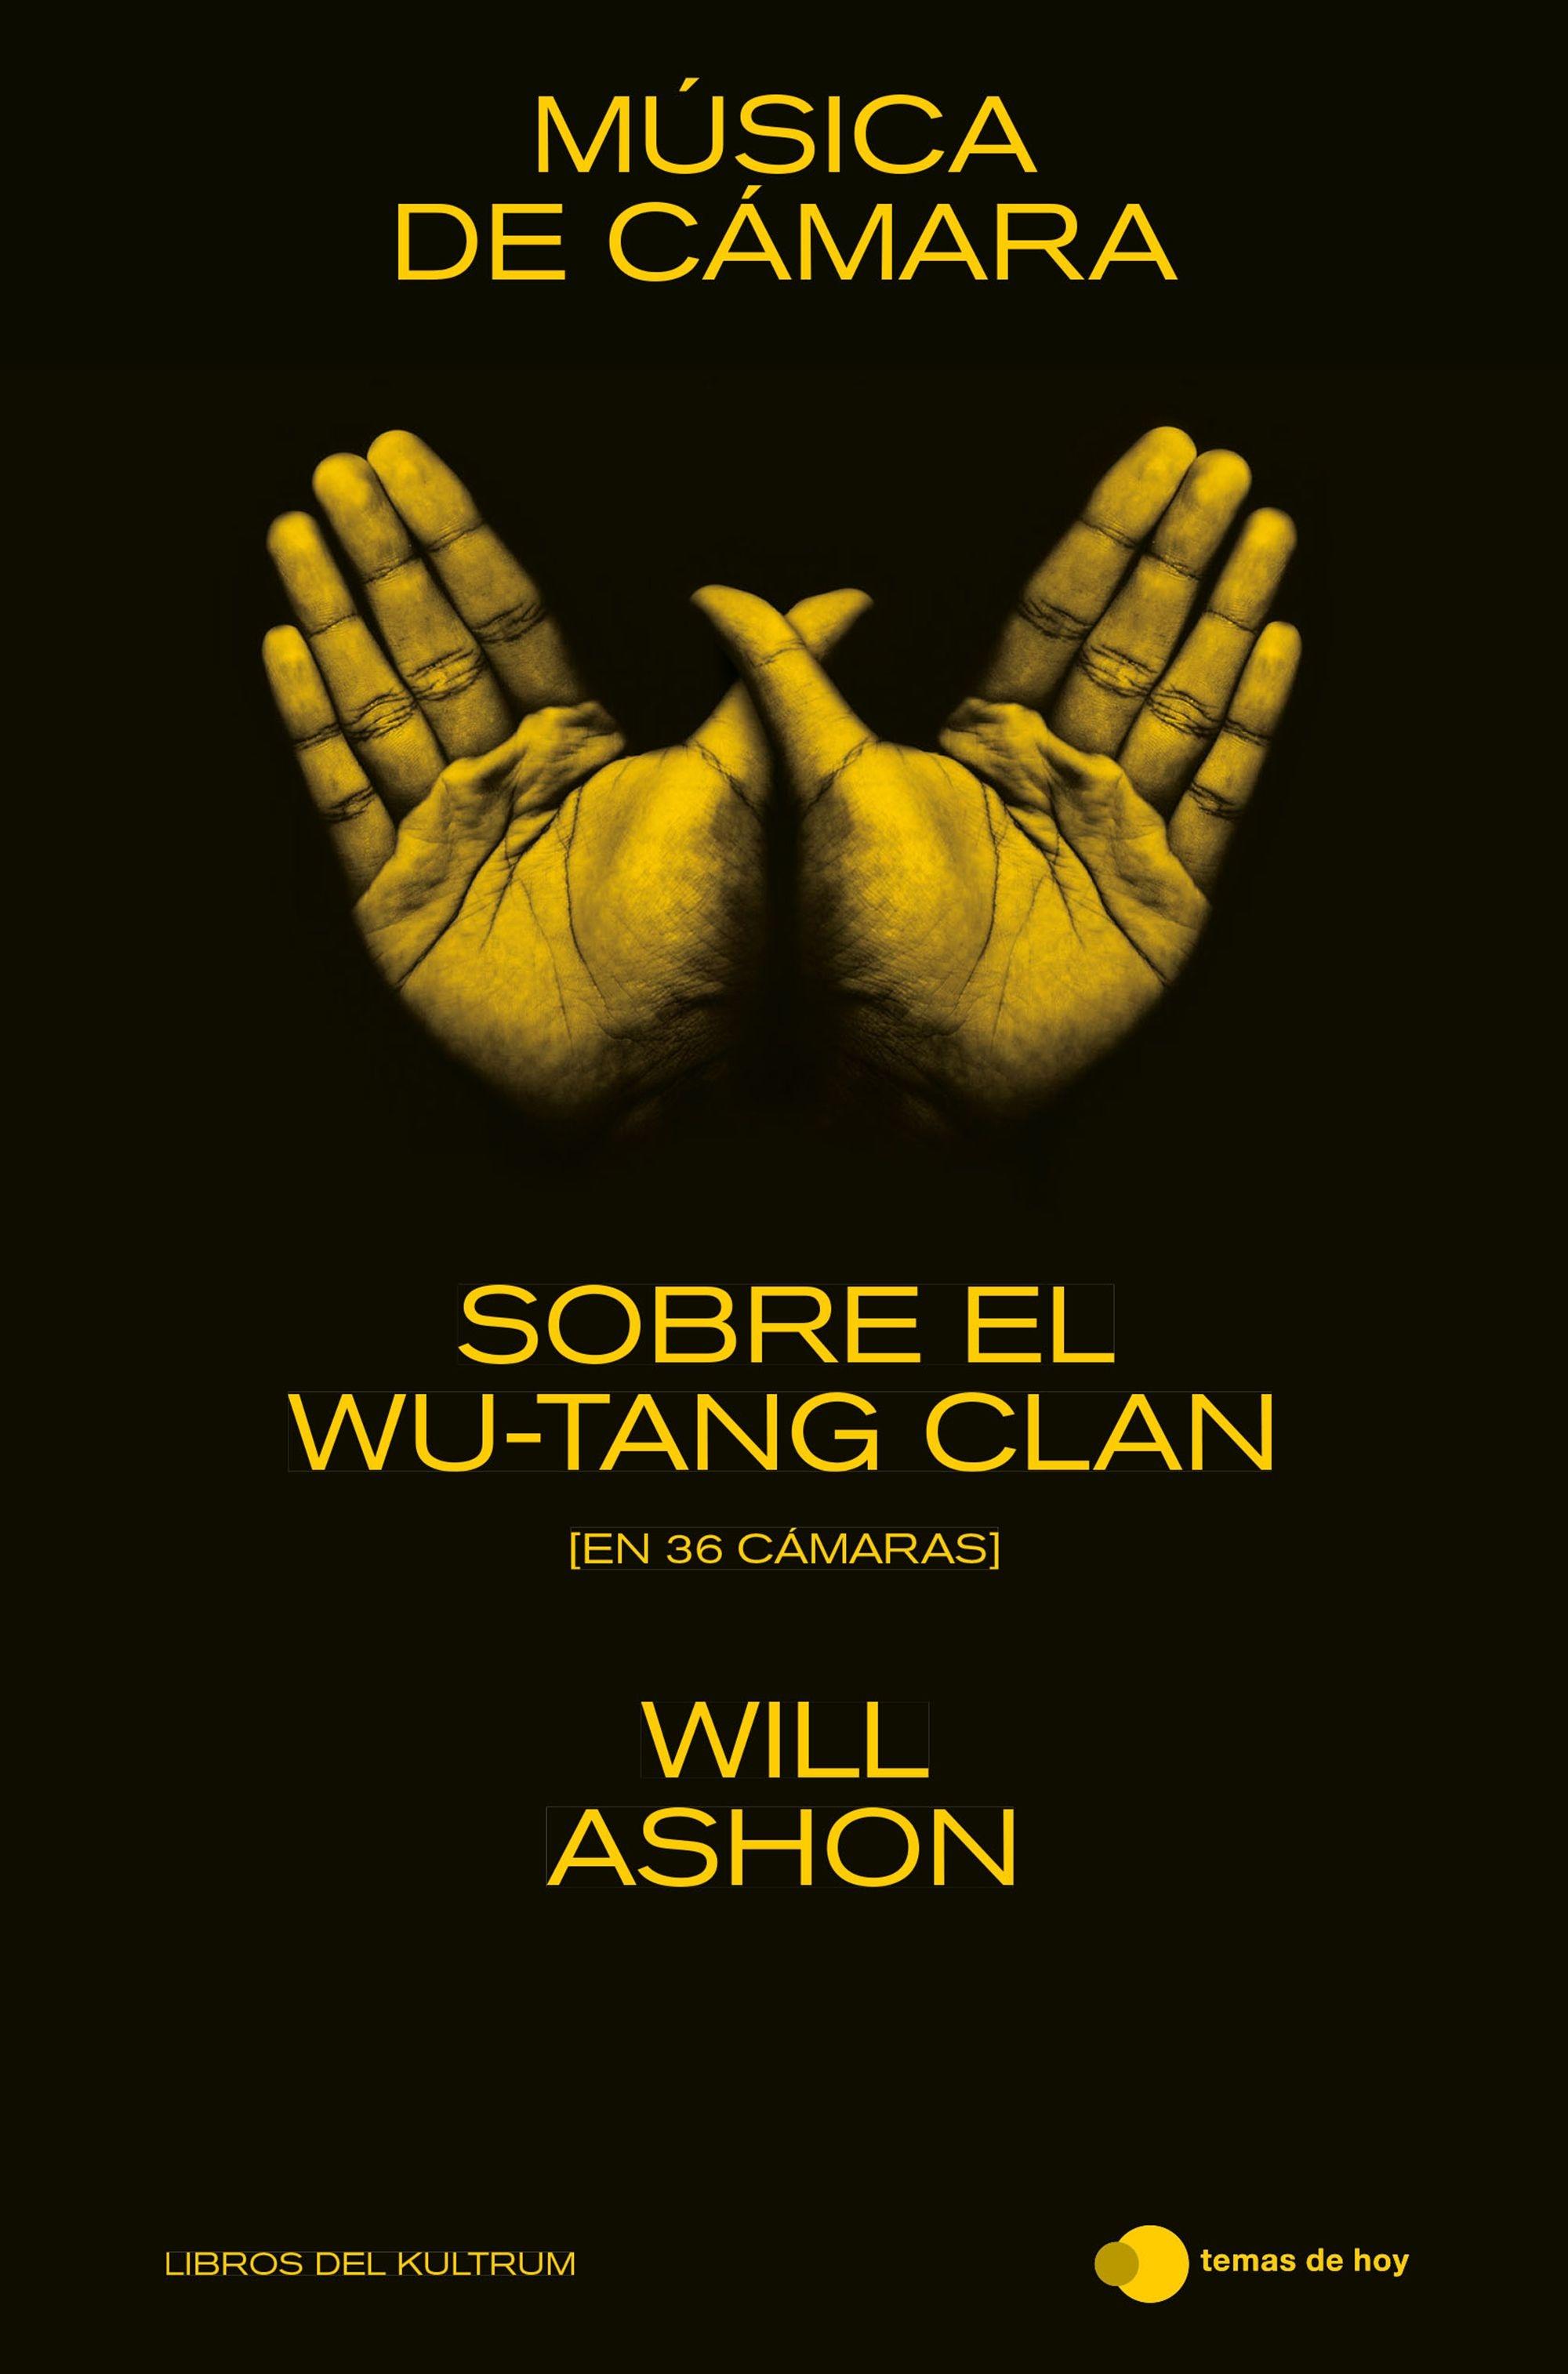 Música de cámara "Sobre el Wu-Tang Clan (en 36 cámaras)"